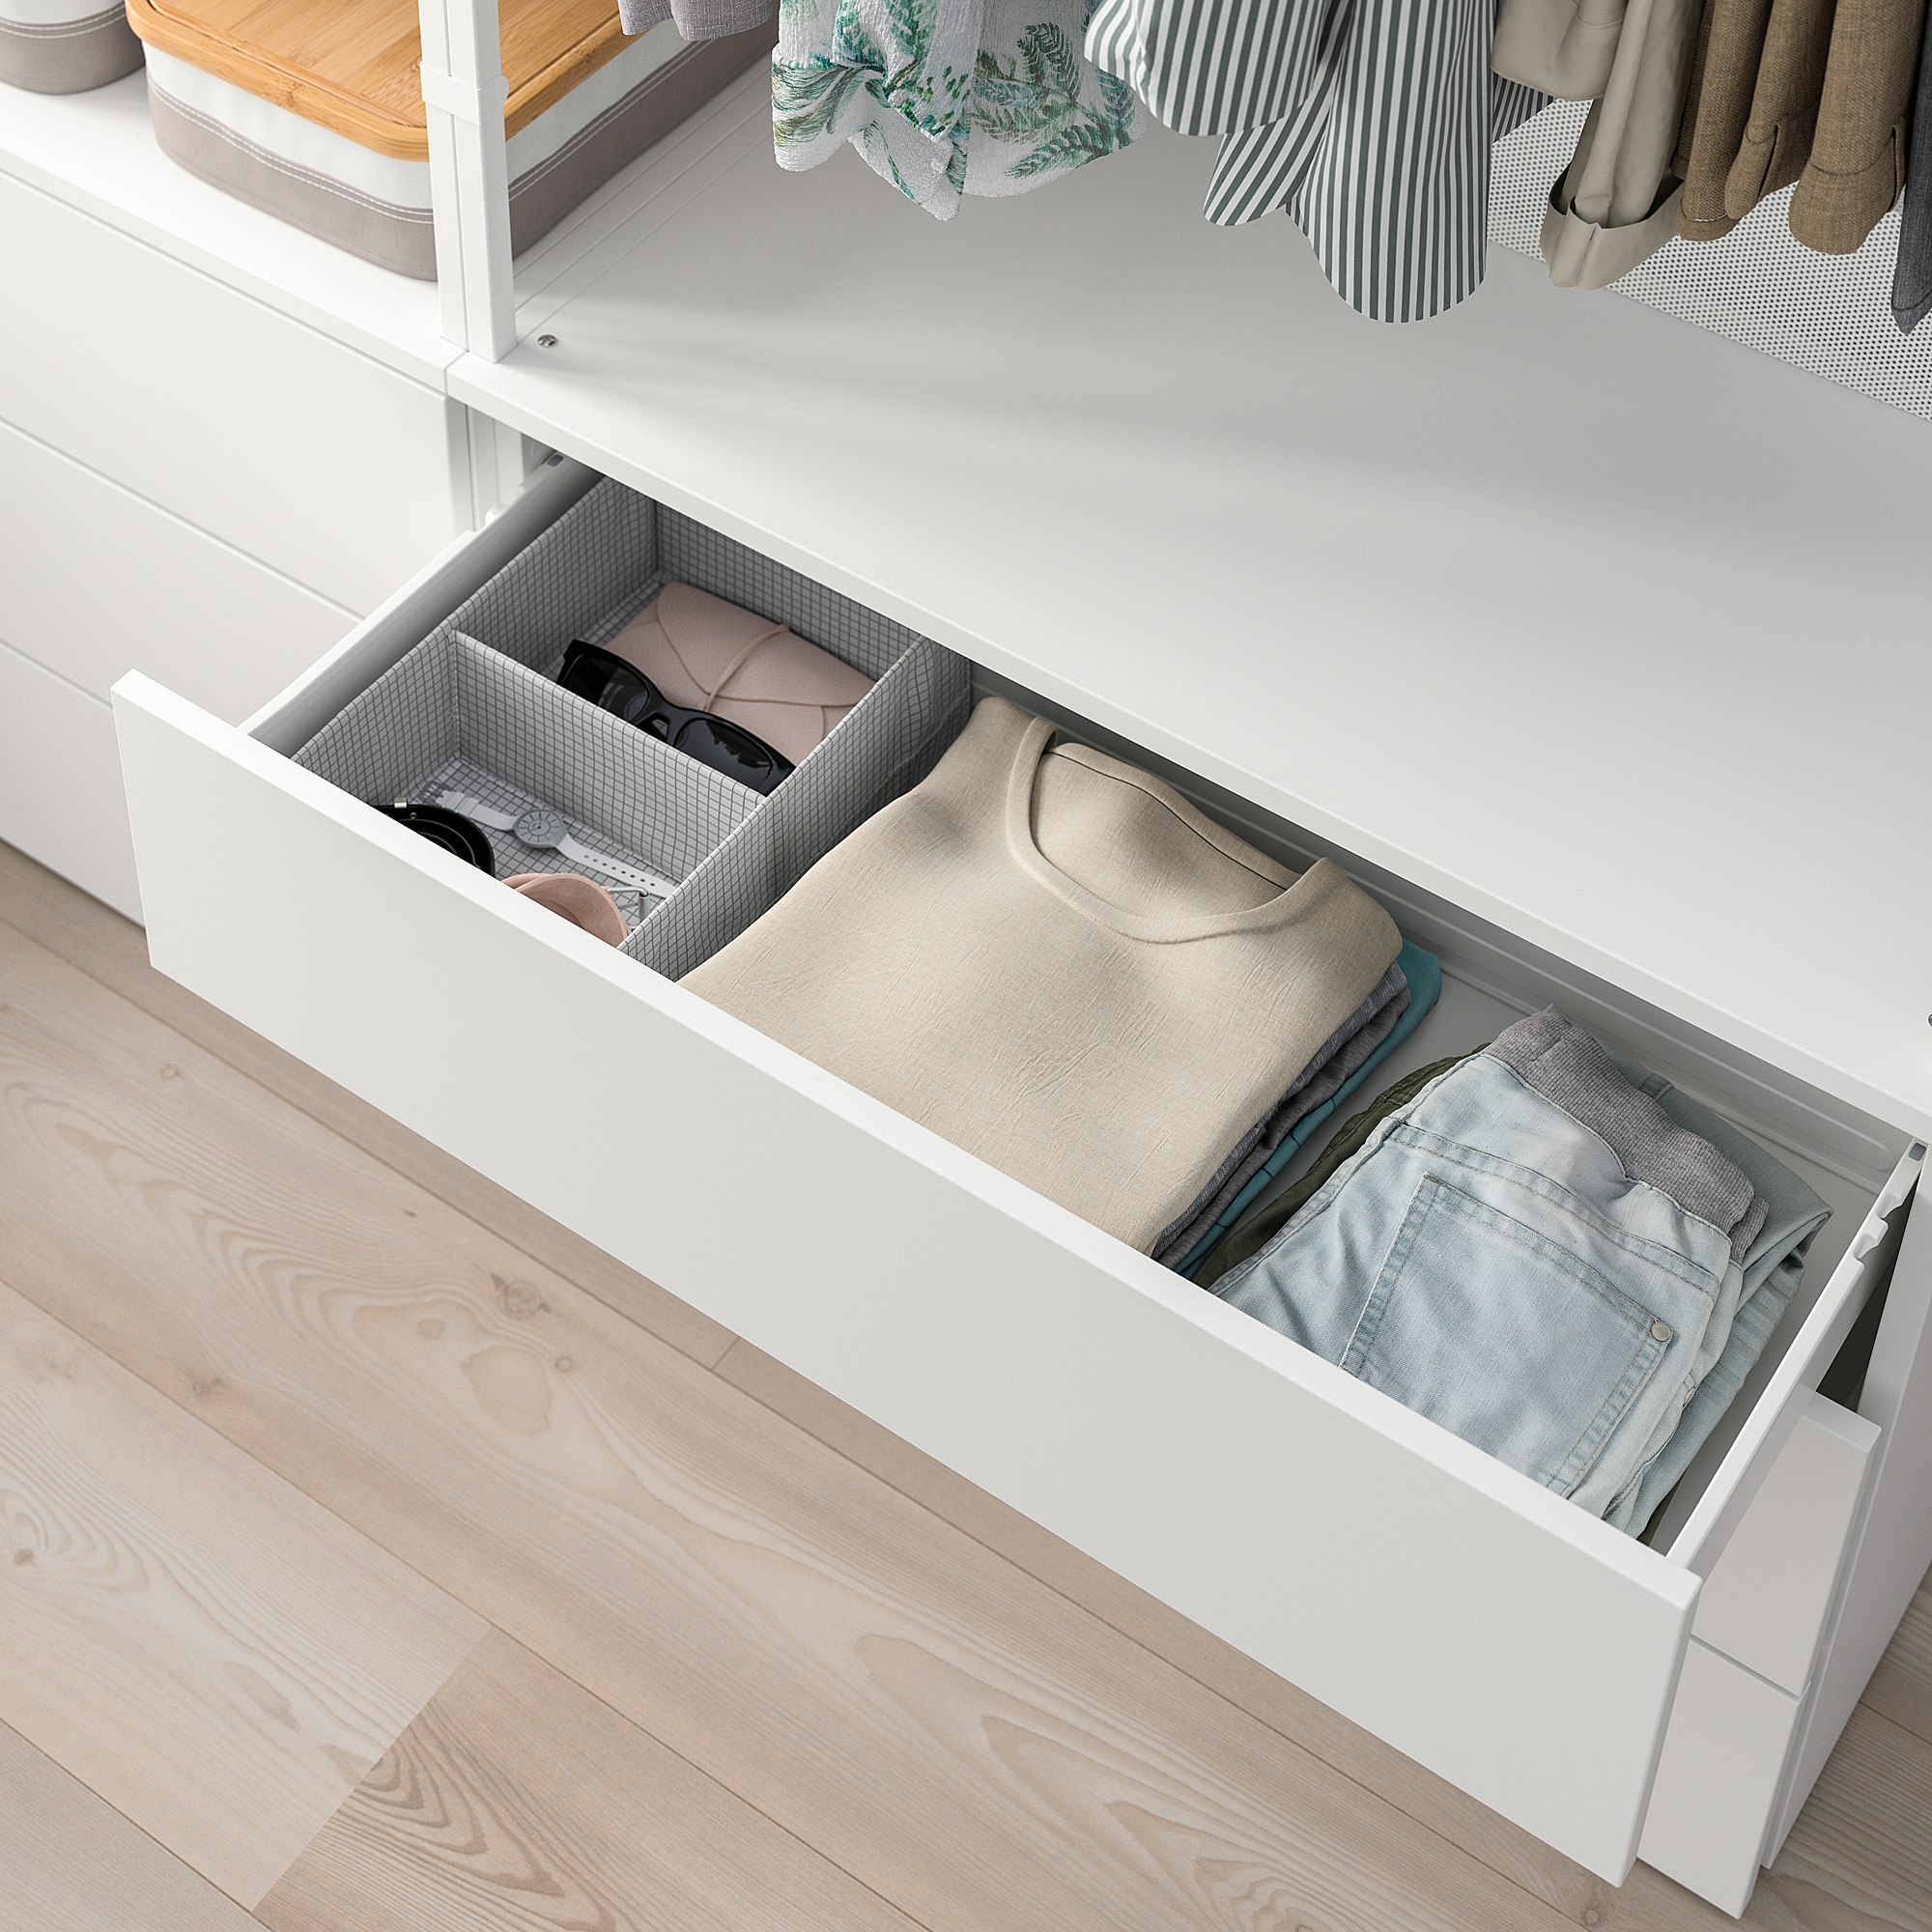 PLATSA wardrobe with 6 drawers